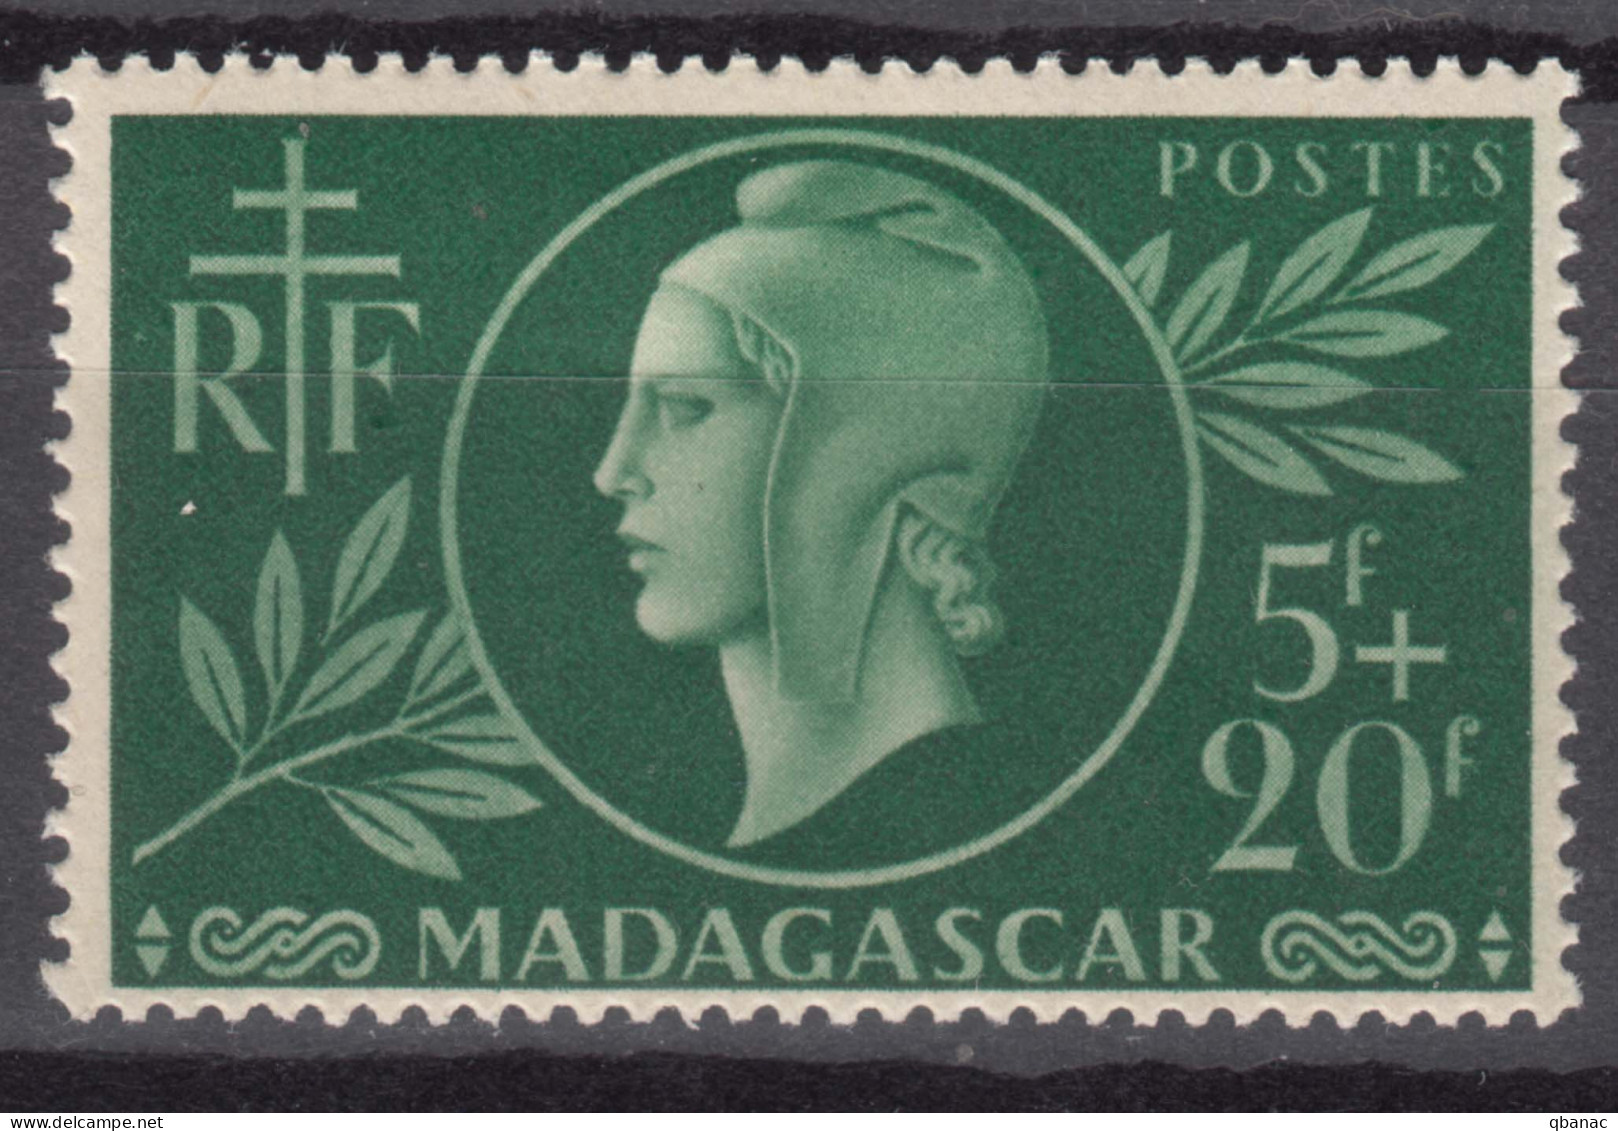 Madagascar 1944 Mi#383 Mint Hinged - Nuovi